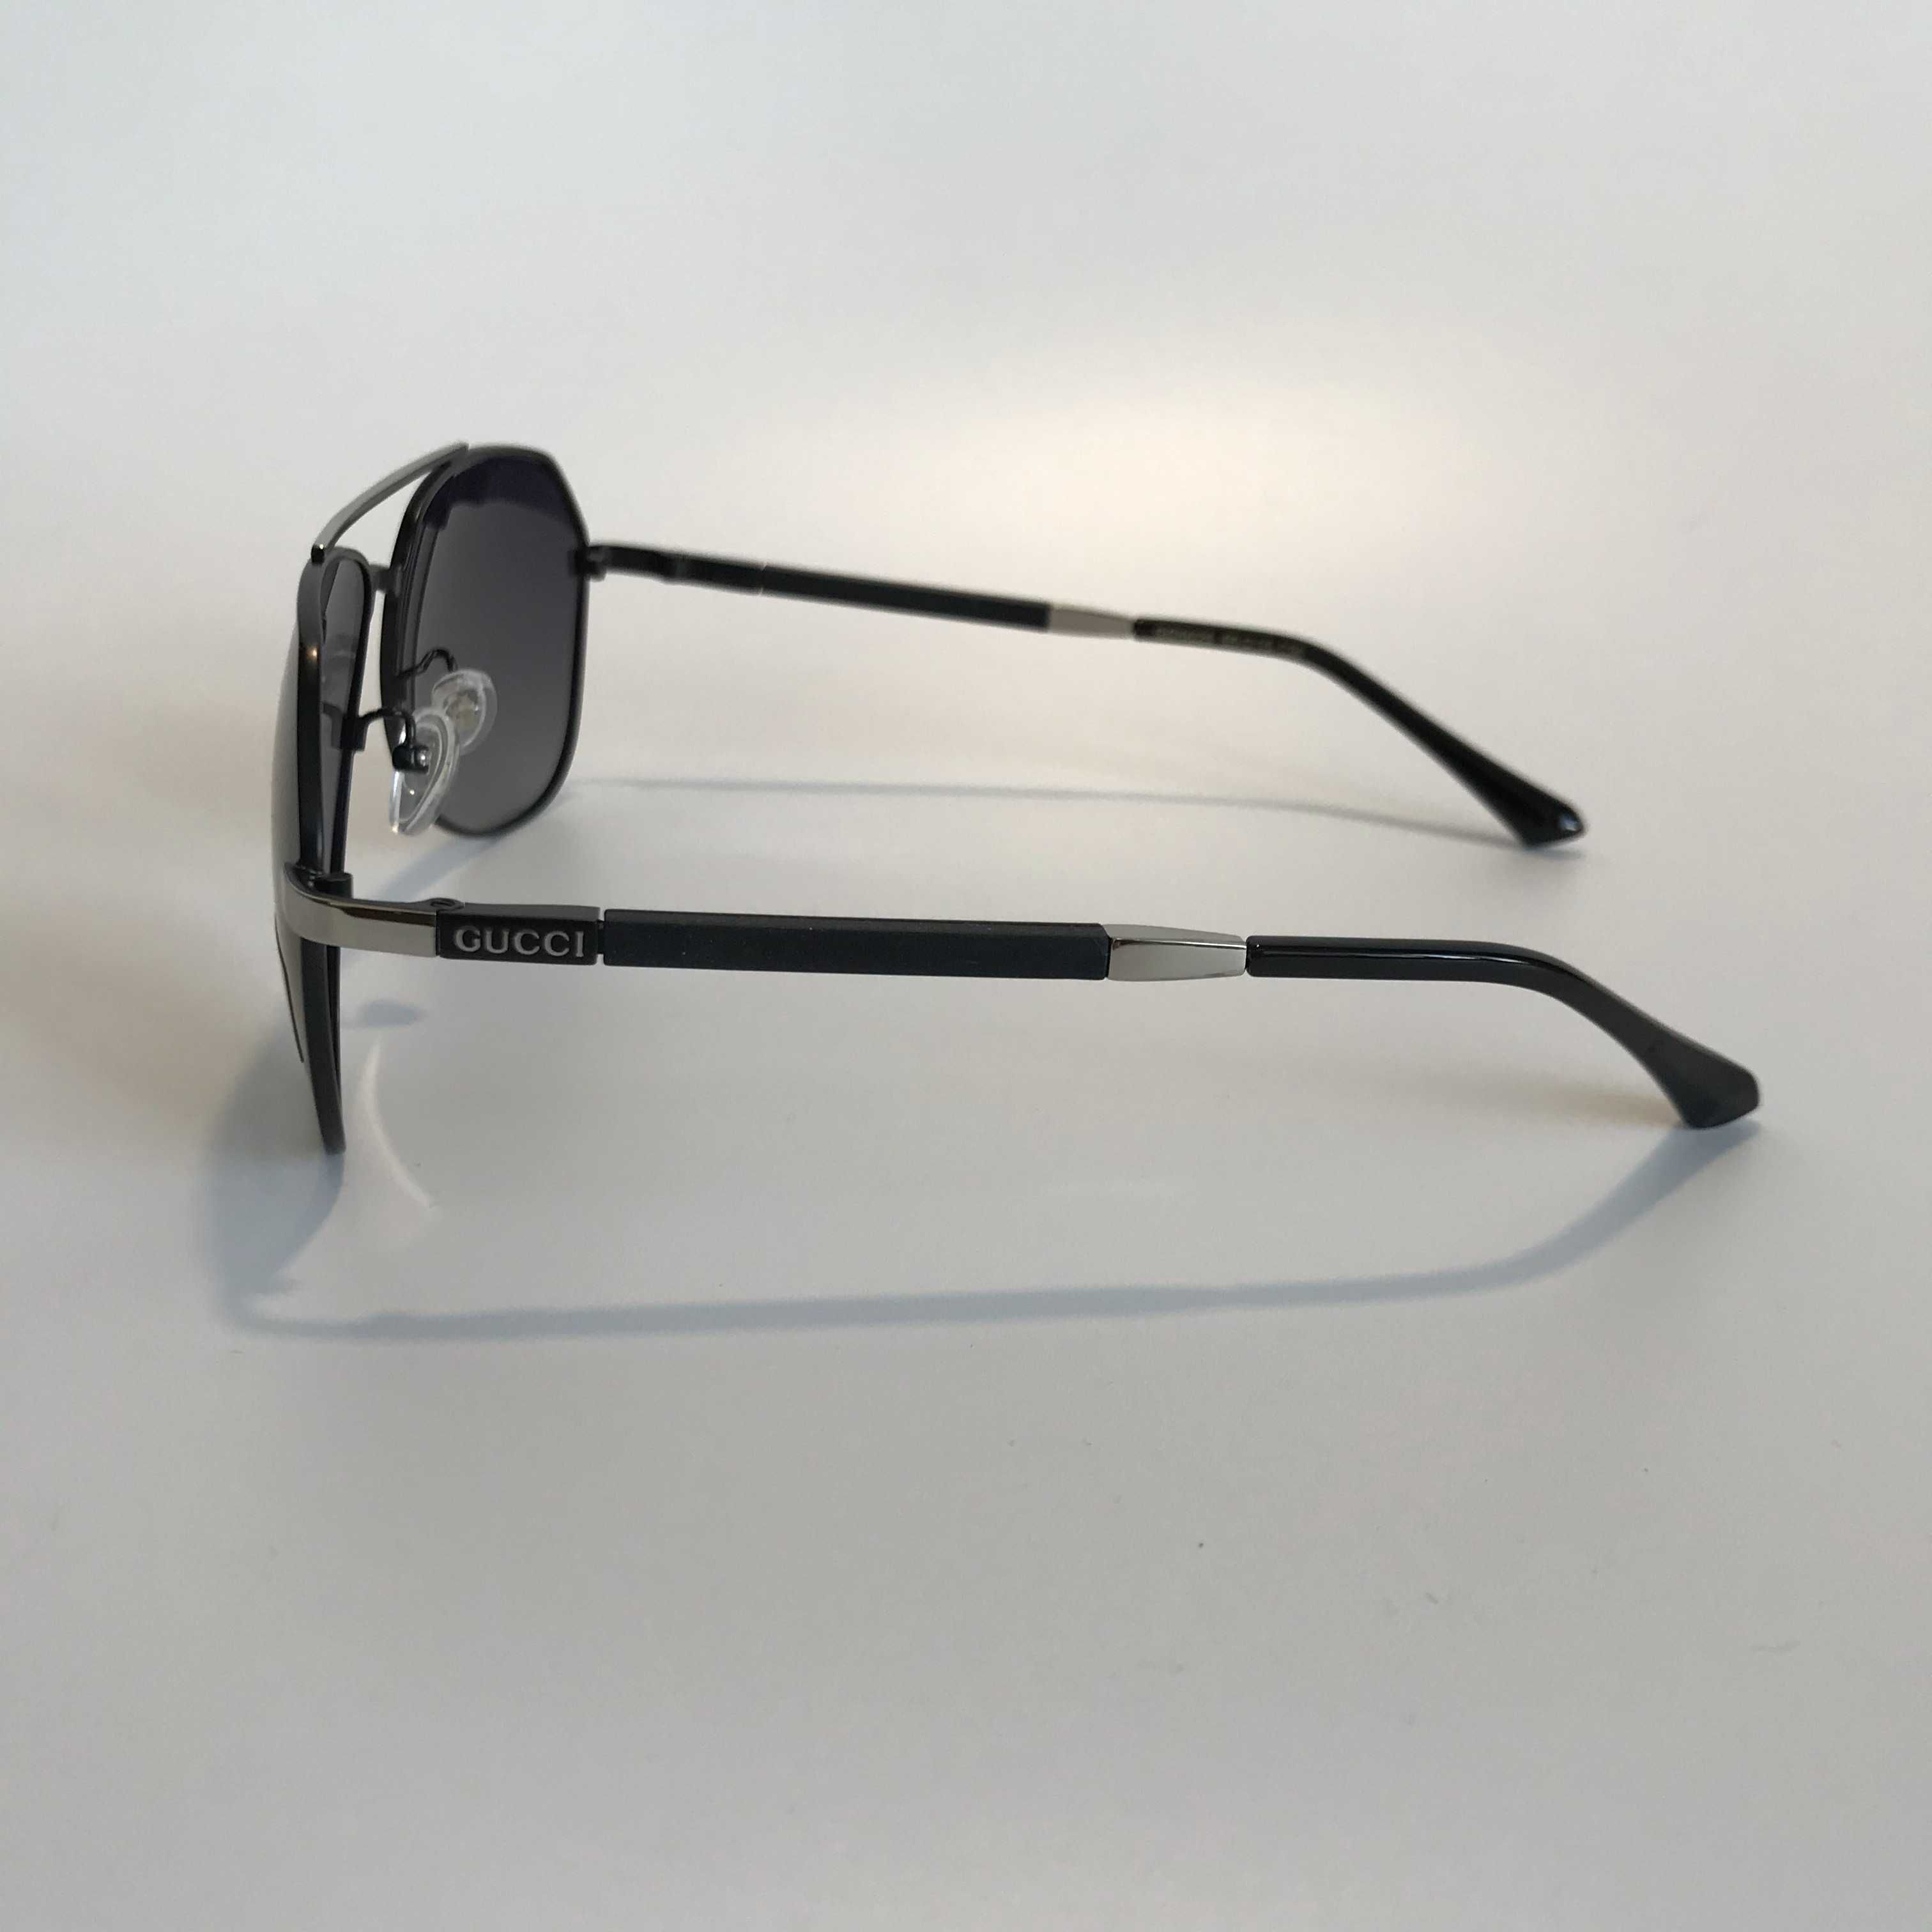 Солнцезащитные очки Gucci Aviator